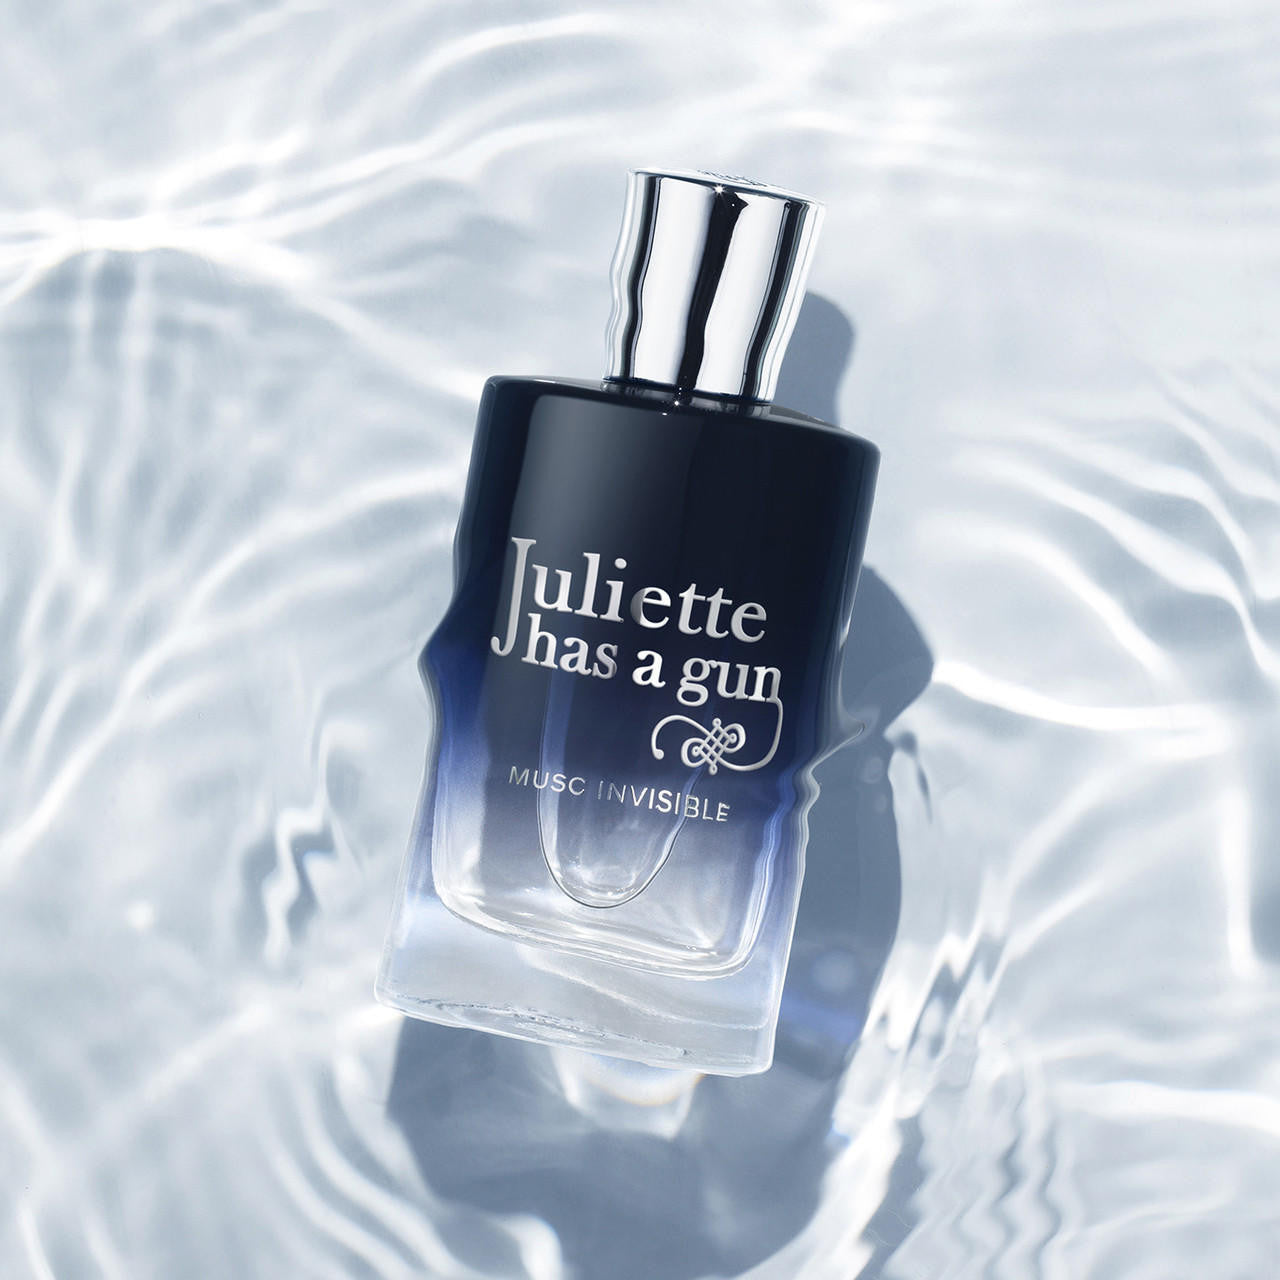  Juliette Has A Gun Musc Invisible Eau de Parfum 